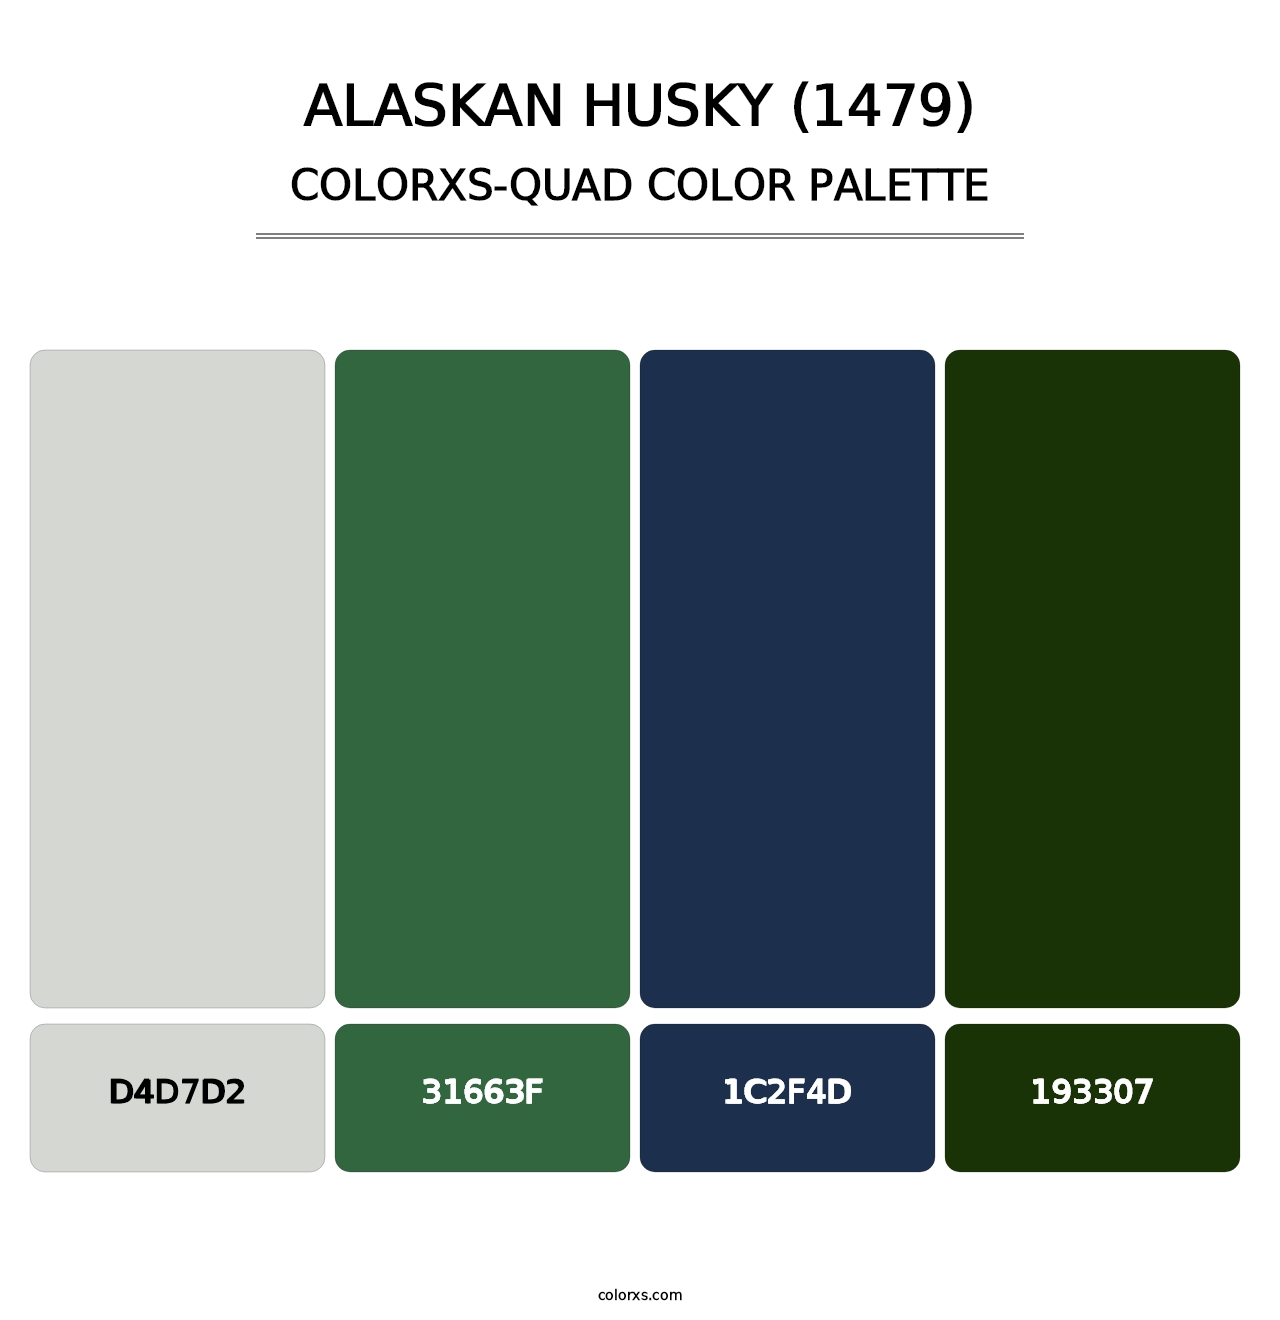 Alaskan Husky (1479) - Colorxs Quad Palette